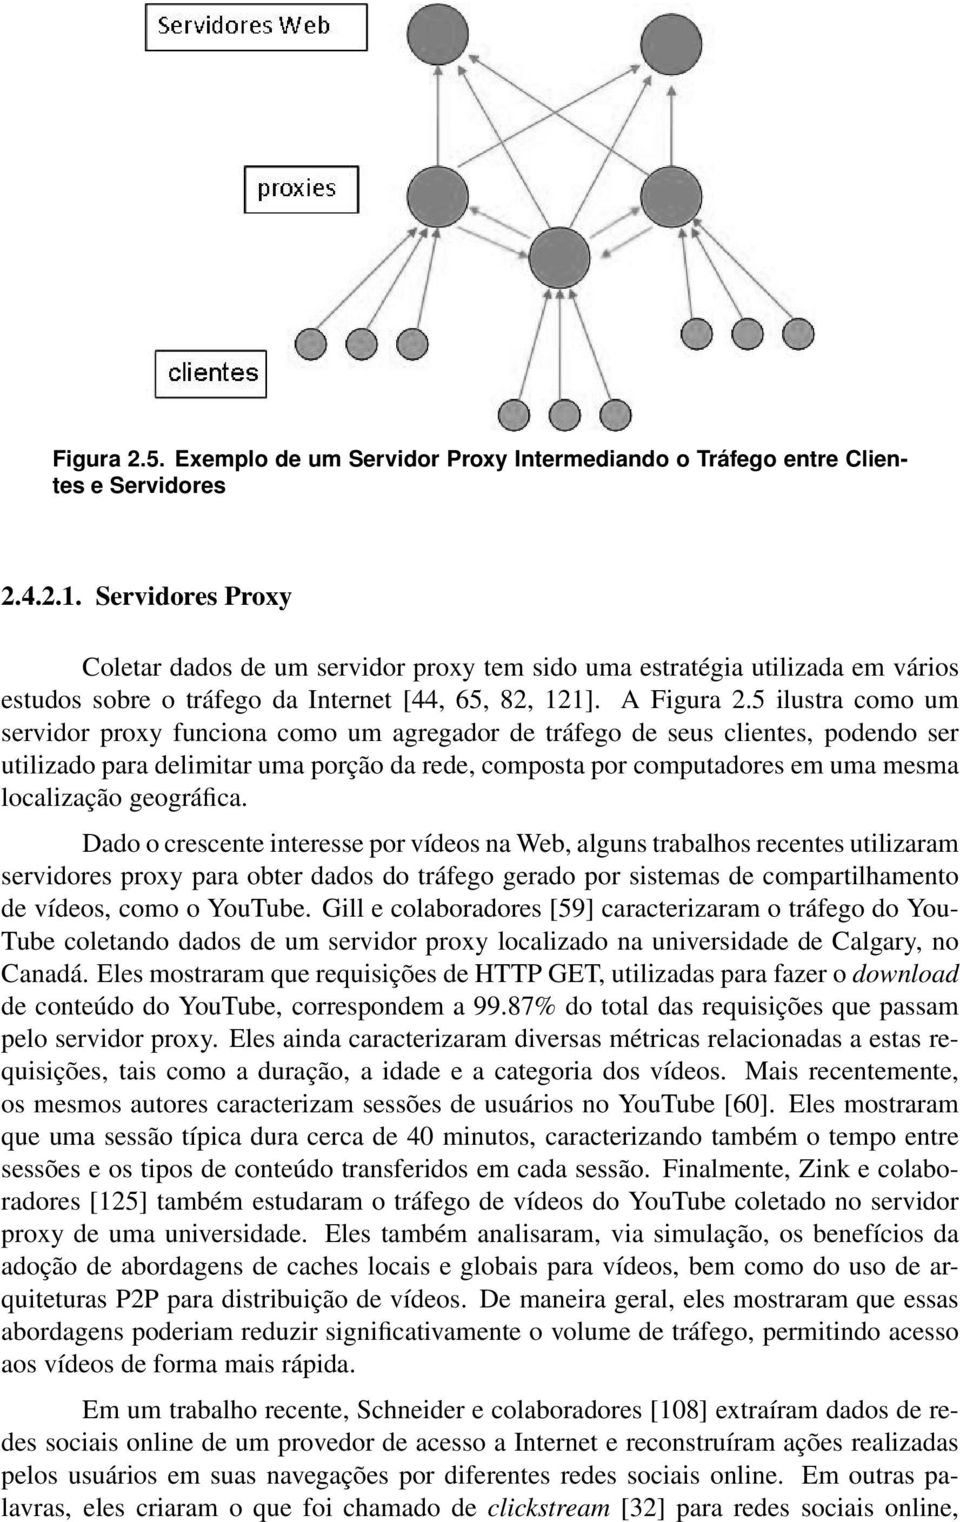 5 ilustra como um servidor proxy funciona como um agregador de tráfego de seus clientes, podendo ser utilizado para delimitar uma porção da rede, composta por computadores em uma mesma localização